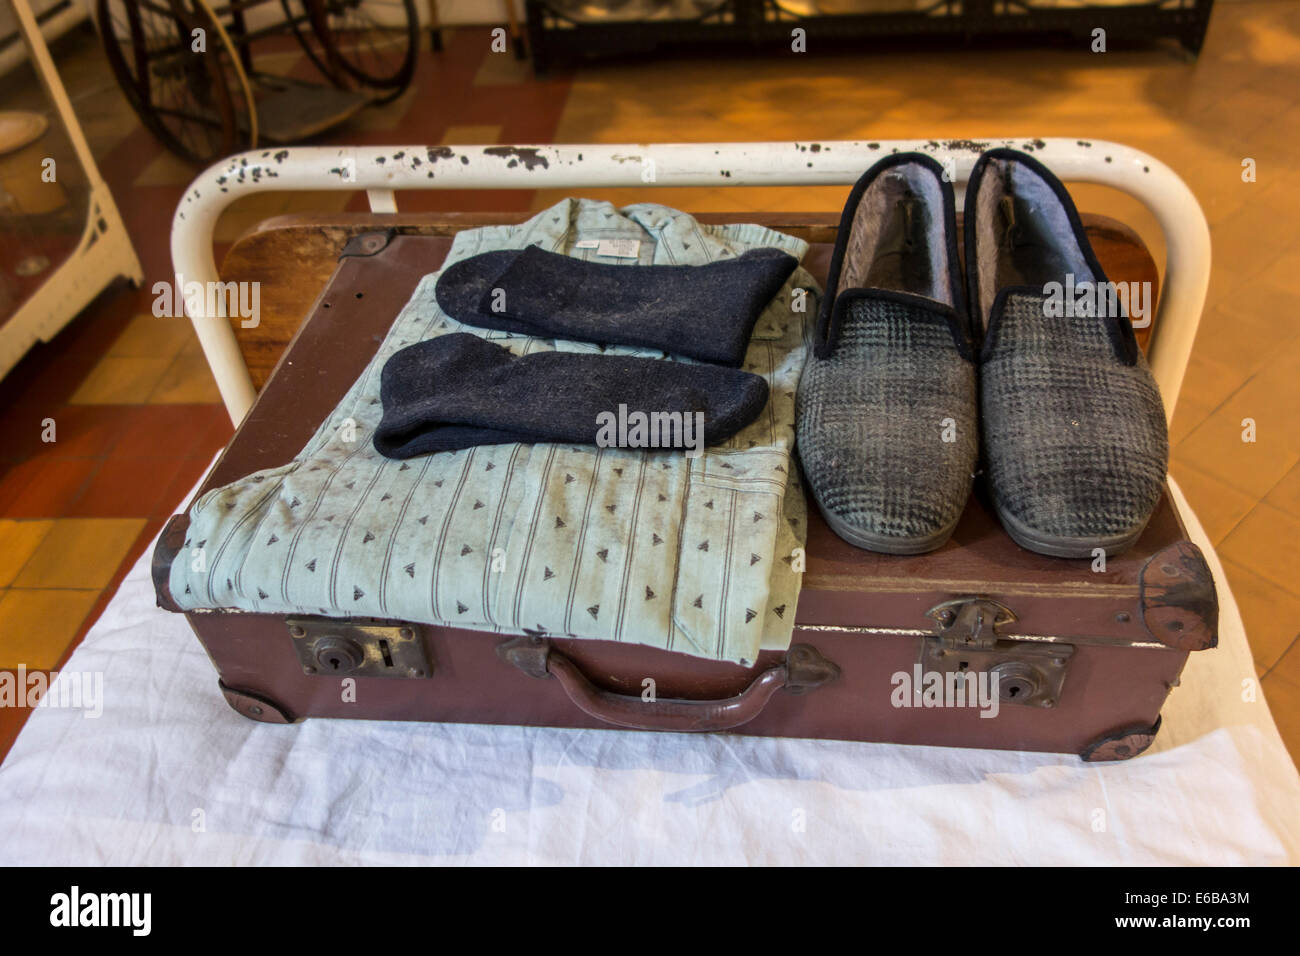 Valise avec pyjama et chaussons de patients psychiatriques sur lit d'hôpital, le Dr Guislain Musée sur la psychiatrie à Gand, Belgique Banque D'Images